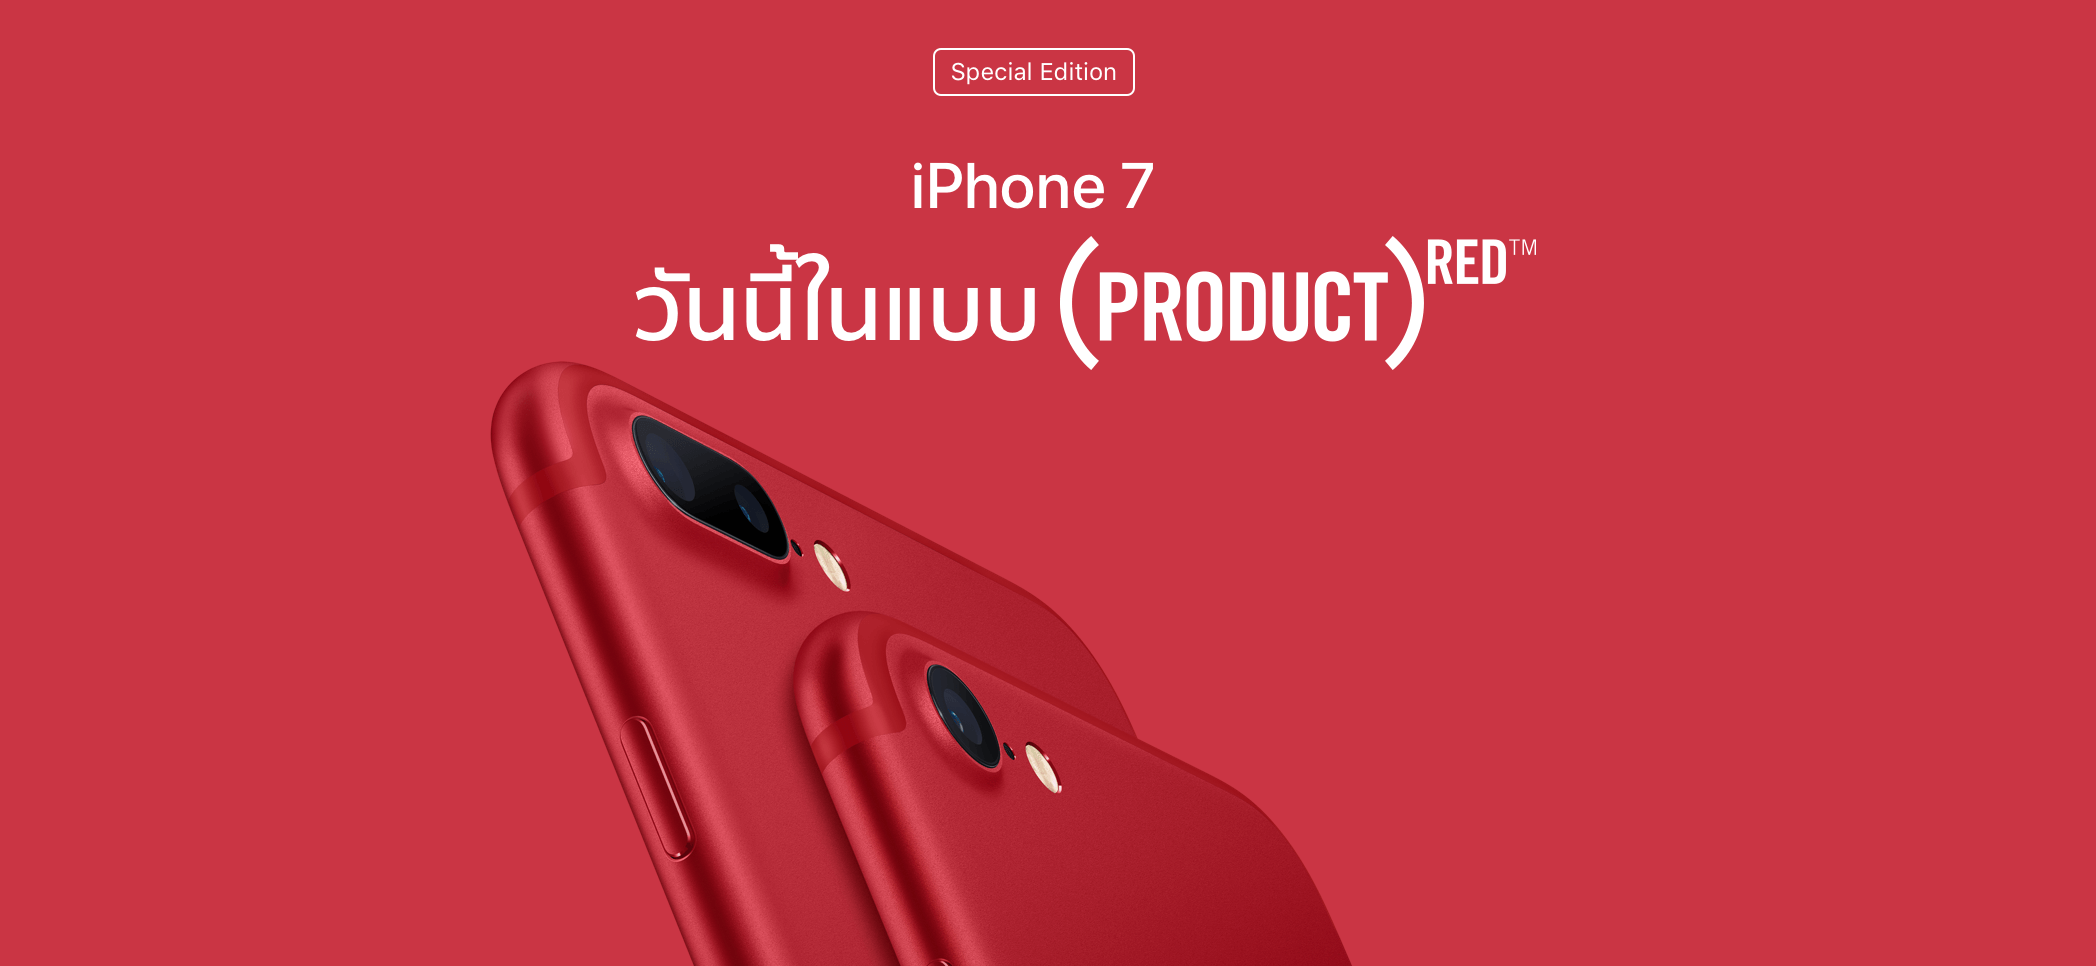 สวยมาก! Apple เปิดตัว iPhone 7/7 Plus สีแดงอย่างเป็นทางการเพื่อสนับสนุนโครงการป้องกันเอดส์